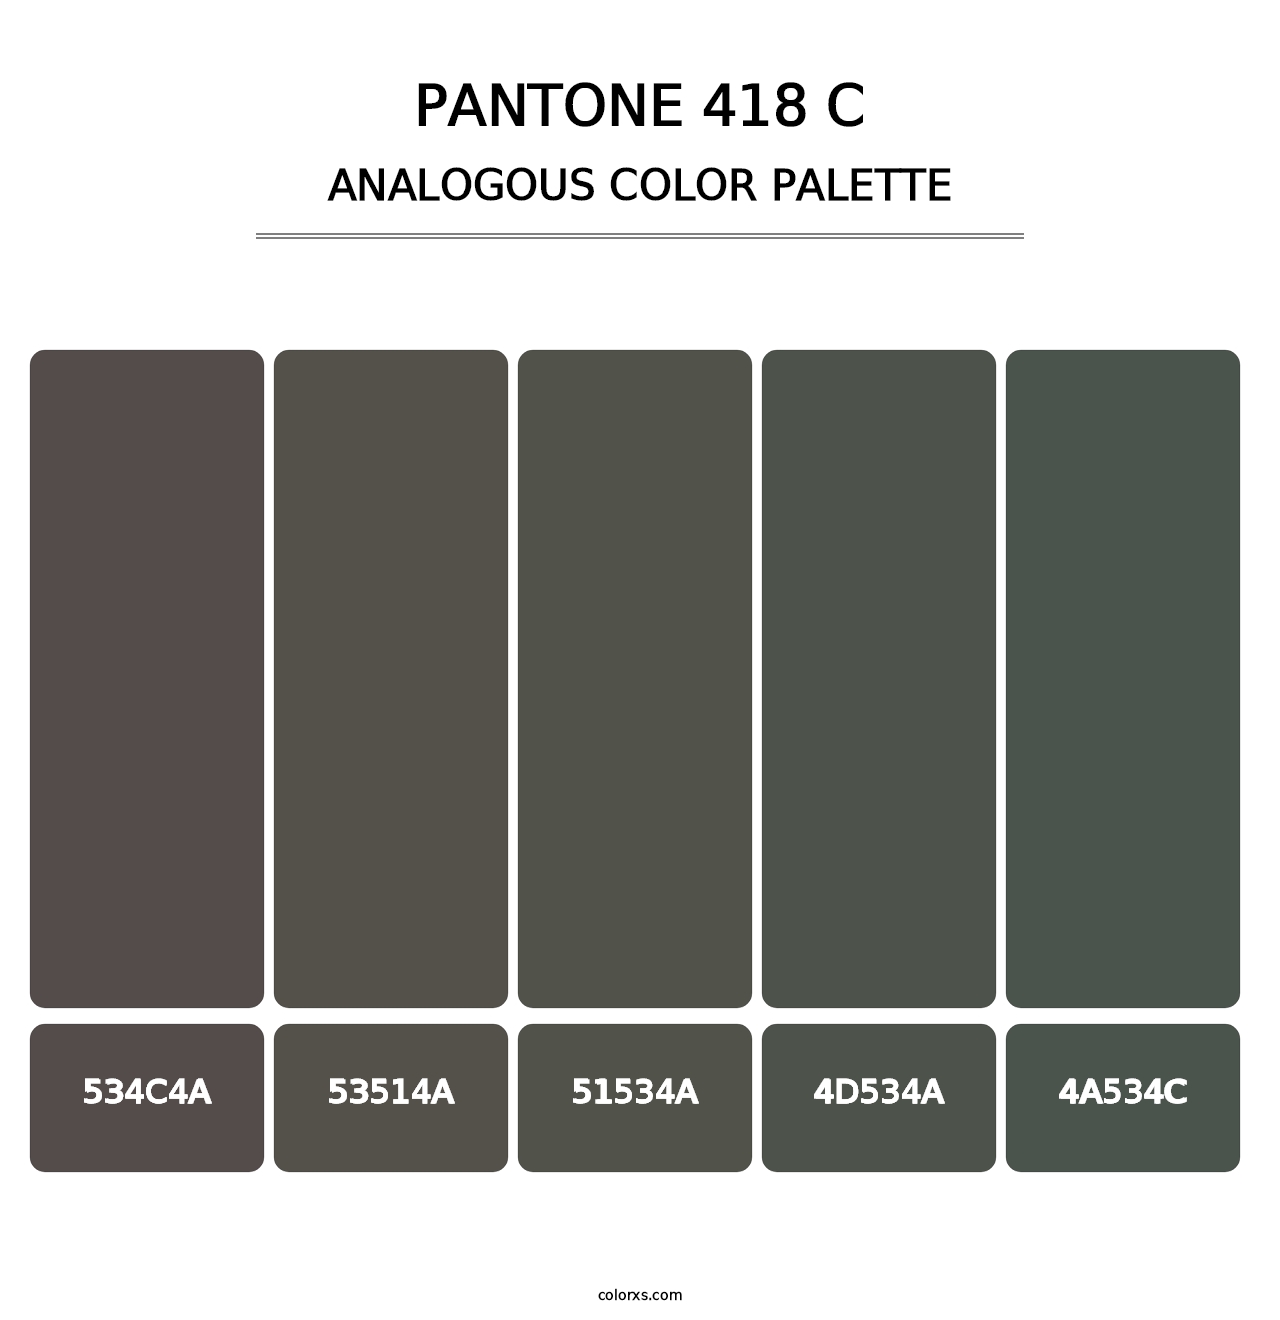 PANTONE 418 C - Analogous Color Palette